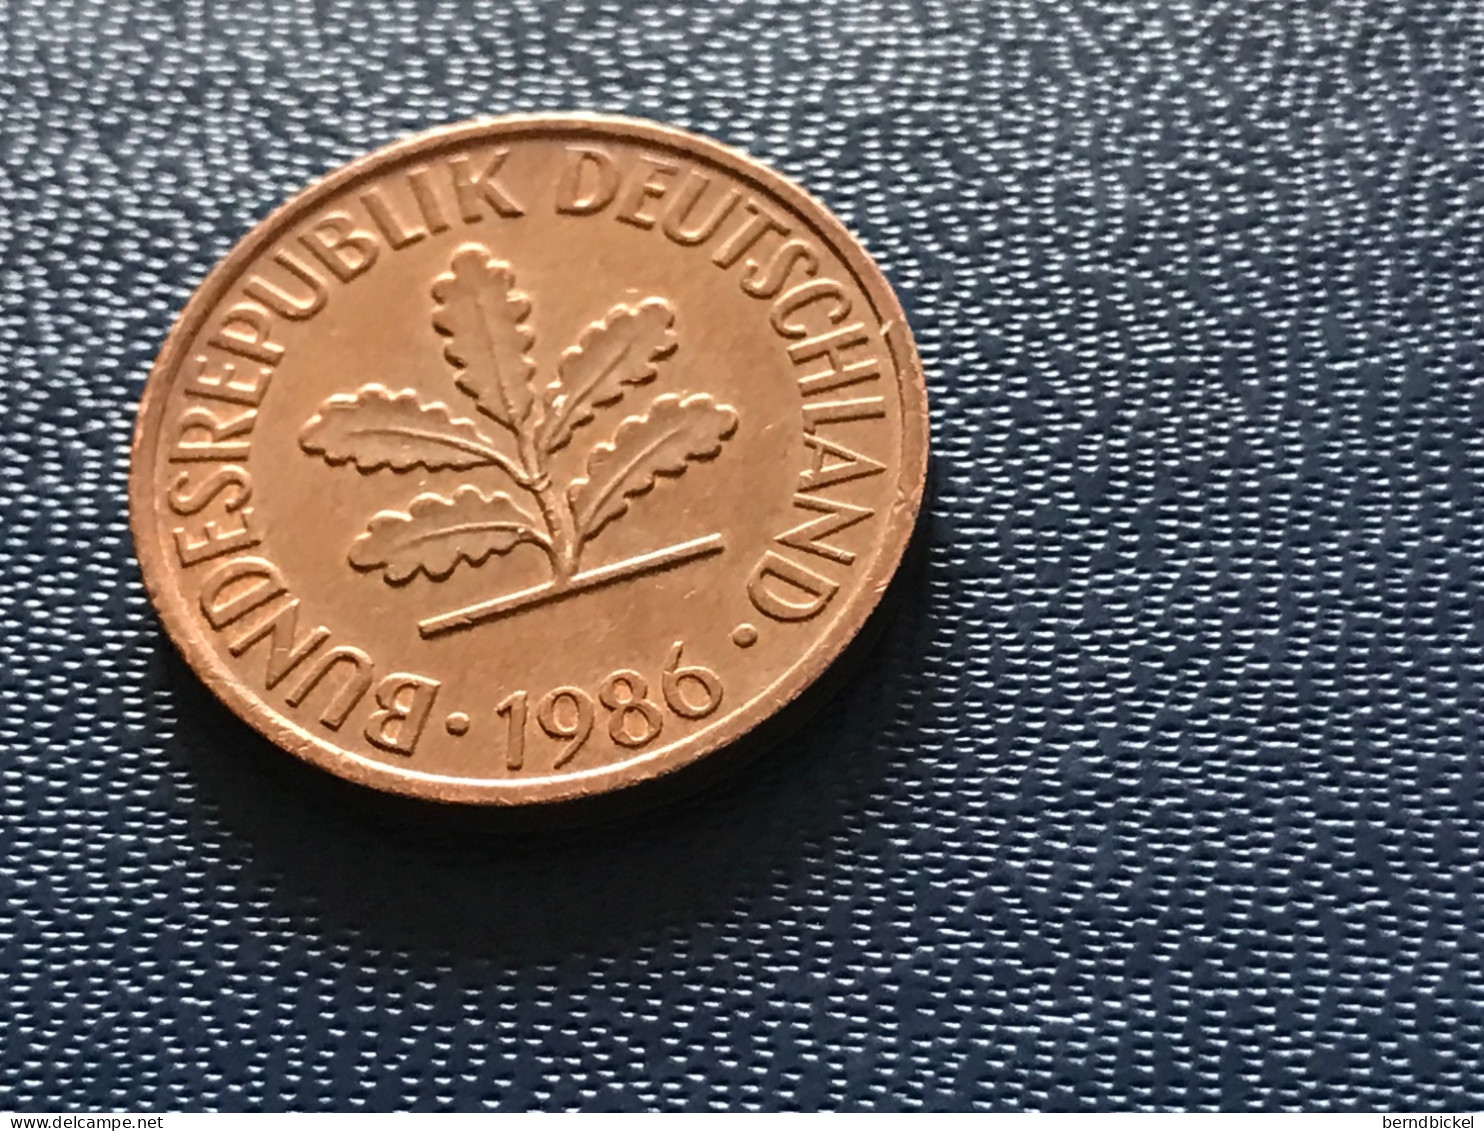 Münze Münzen Umlaufmünze Deutschland 2 Pfennig 1986 Münzzeichen G - 2 Pfennig